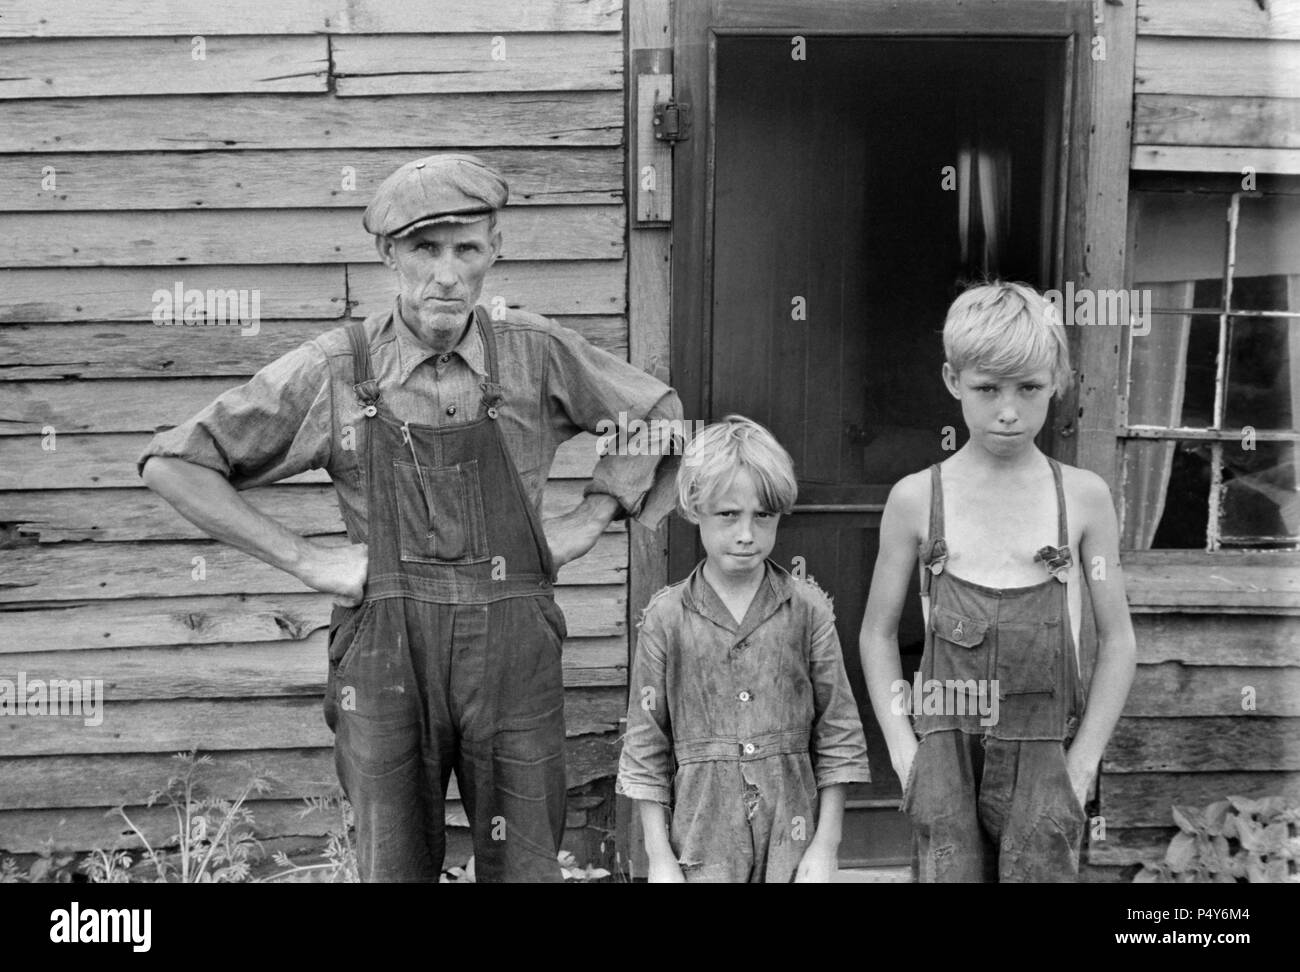 Sur le relief de la famille, près de Urbana, Ohio, USA, Ben Shahn, Farm Security Administration, Août 1938 Banque D'Images